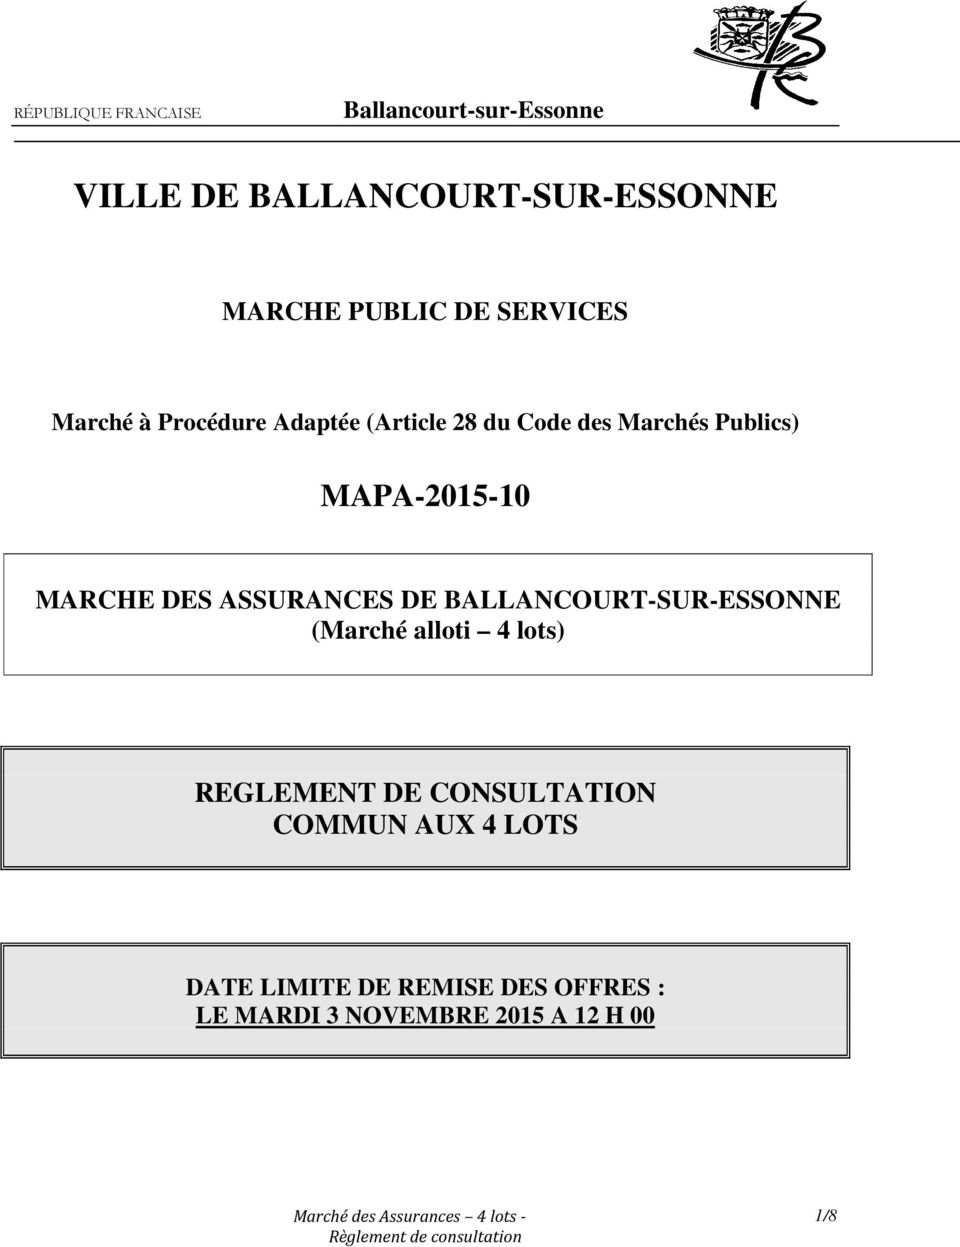 MARCHE DES ASSURANCES DE BALLANCOURT-SUR-ESSONNE (Marché alloti 4 lots) REGLEMENT DE